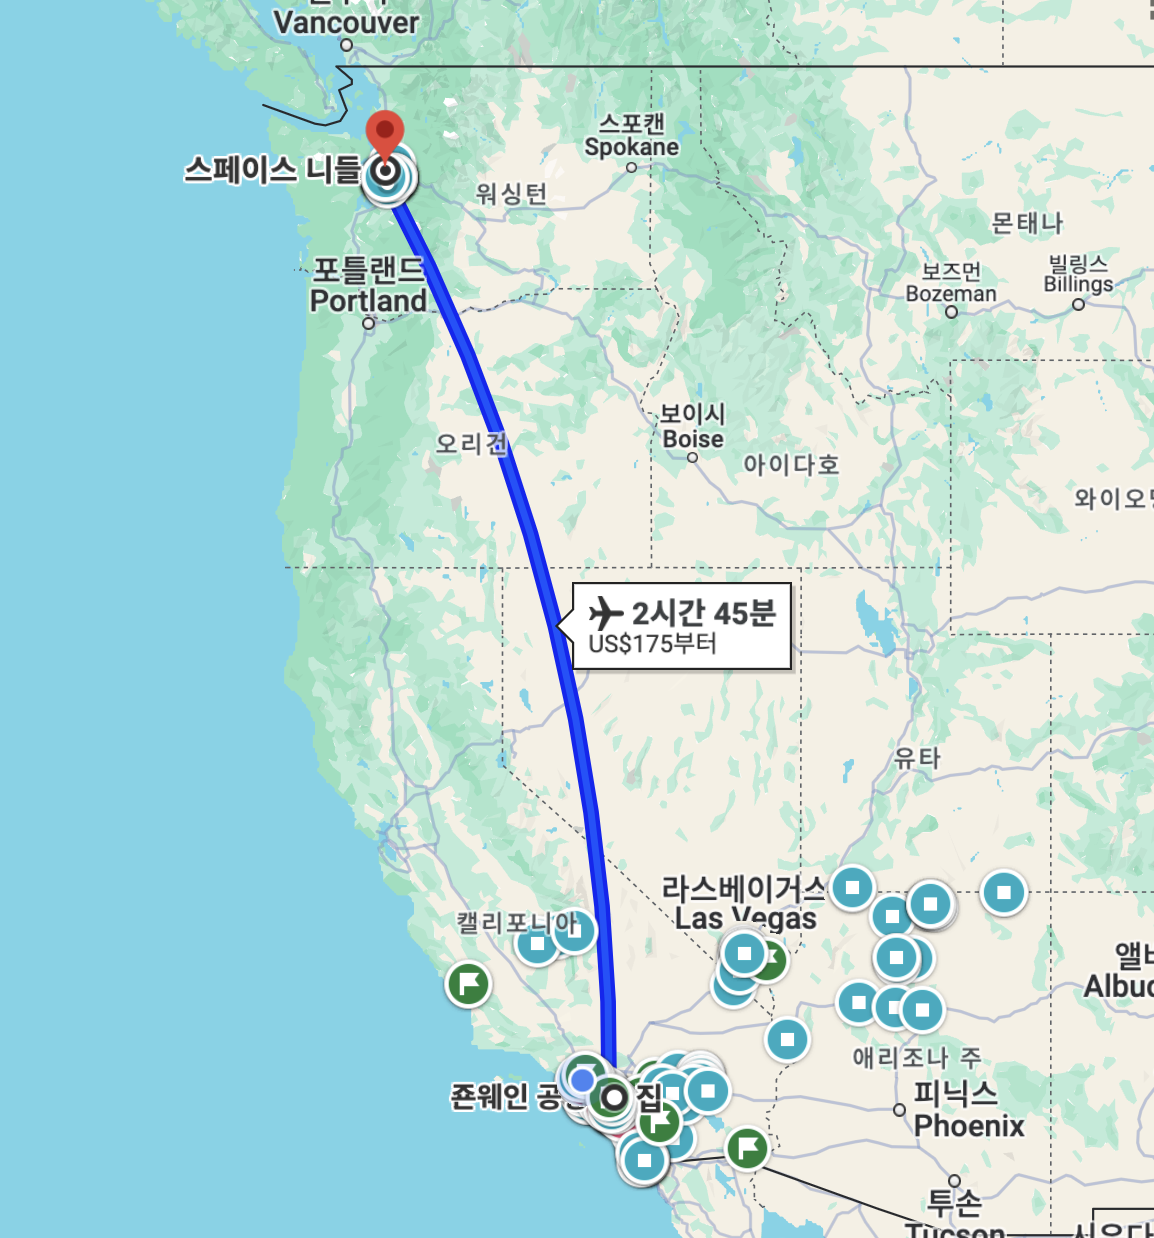 동네 어바인에서 시애틀까지의 거리는 비행기로 약 3시간 정도 입니다. 